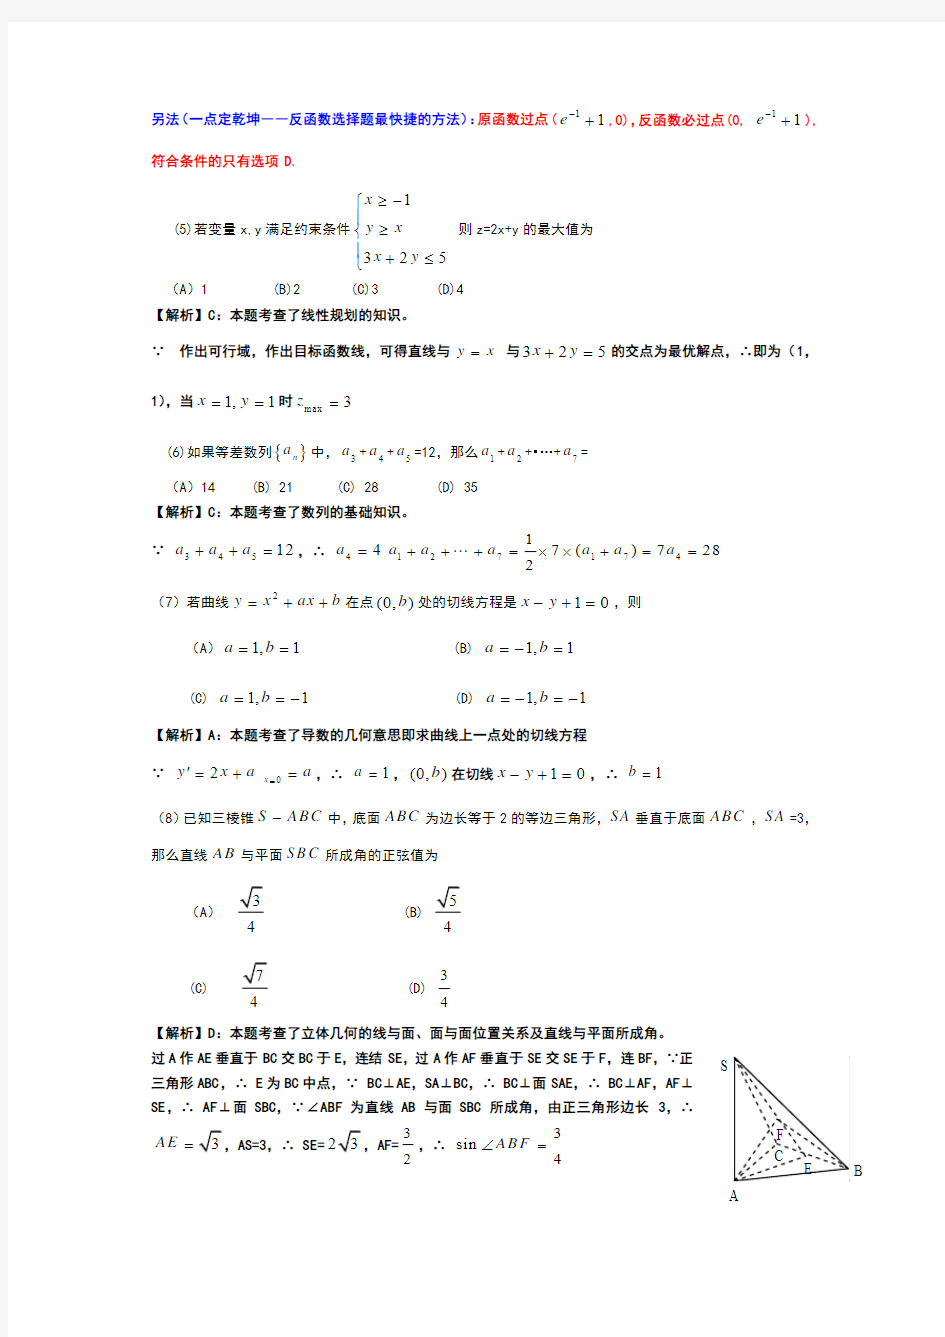 贵州省2010年高考文科数学试卷及答案.